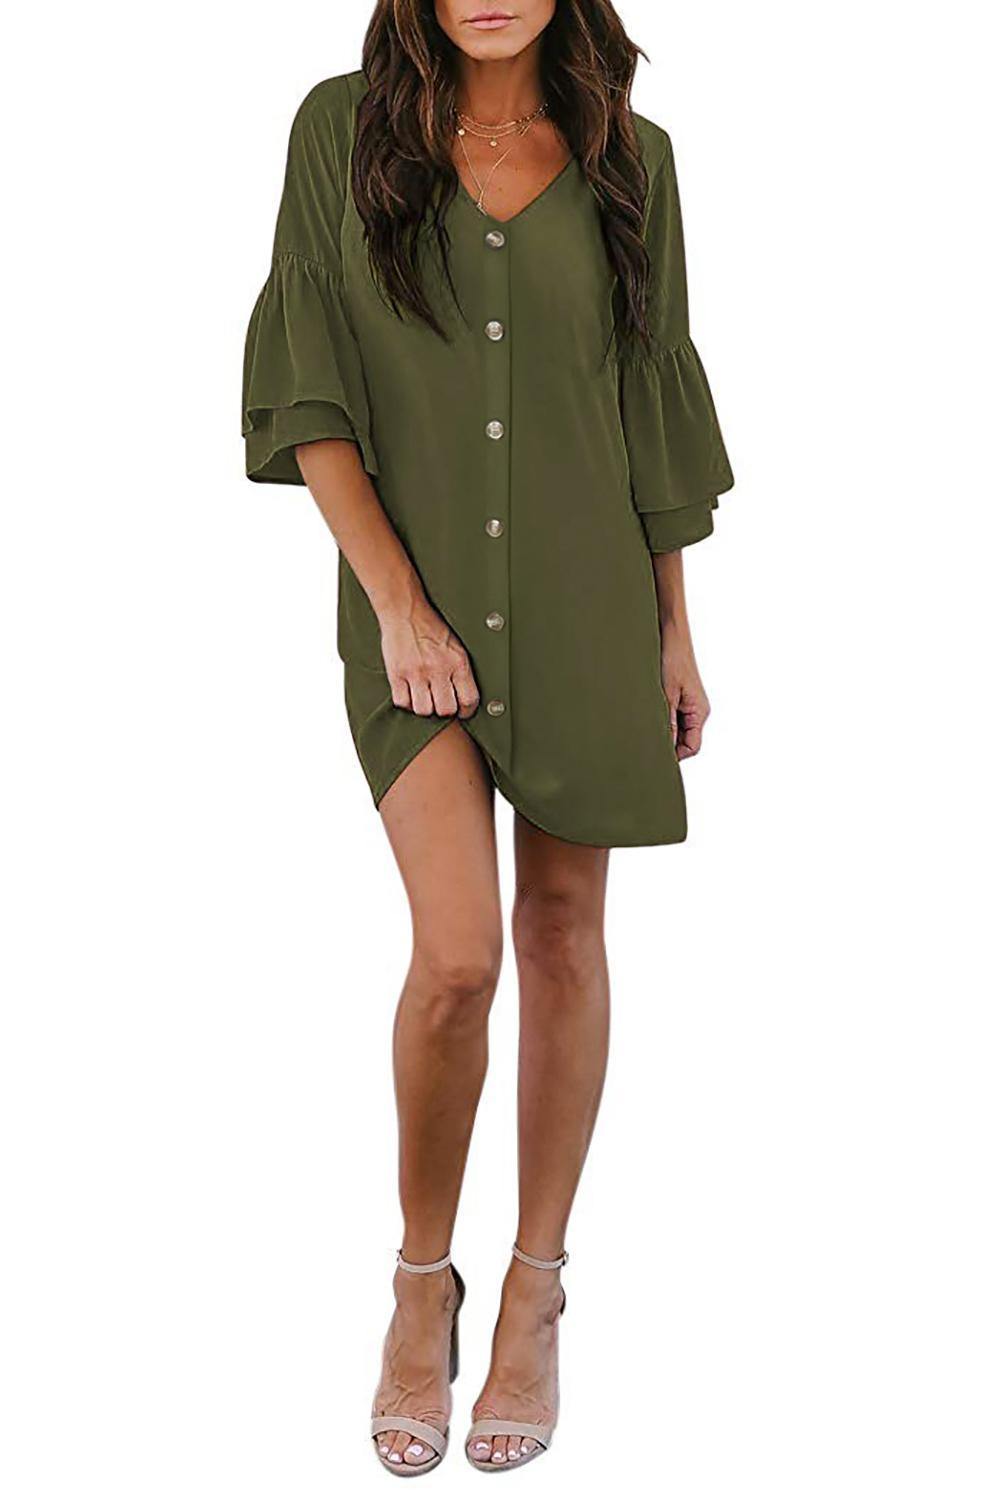 V Neck Buttoned Bell Sleeve Shift Shirt Dress - L & M Kee, LLC